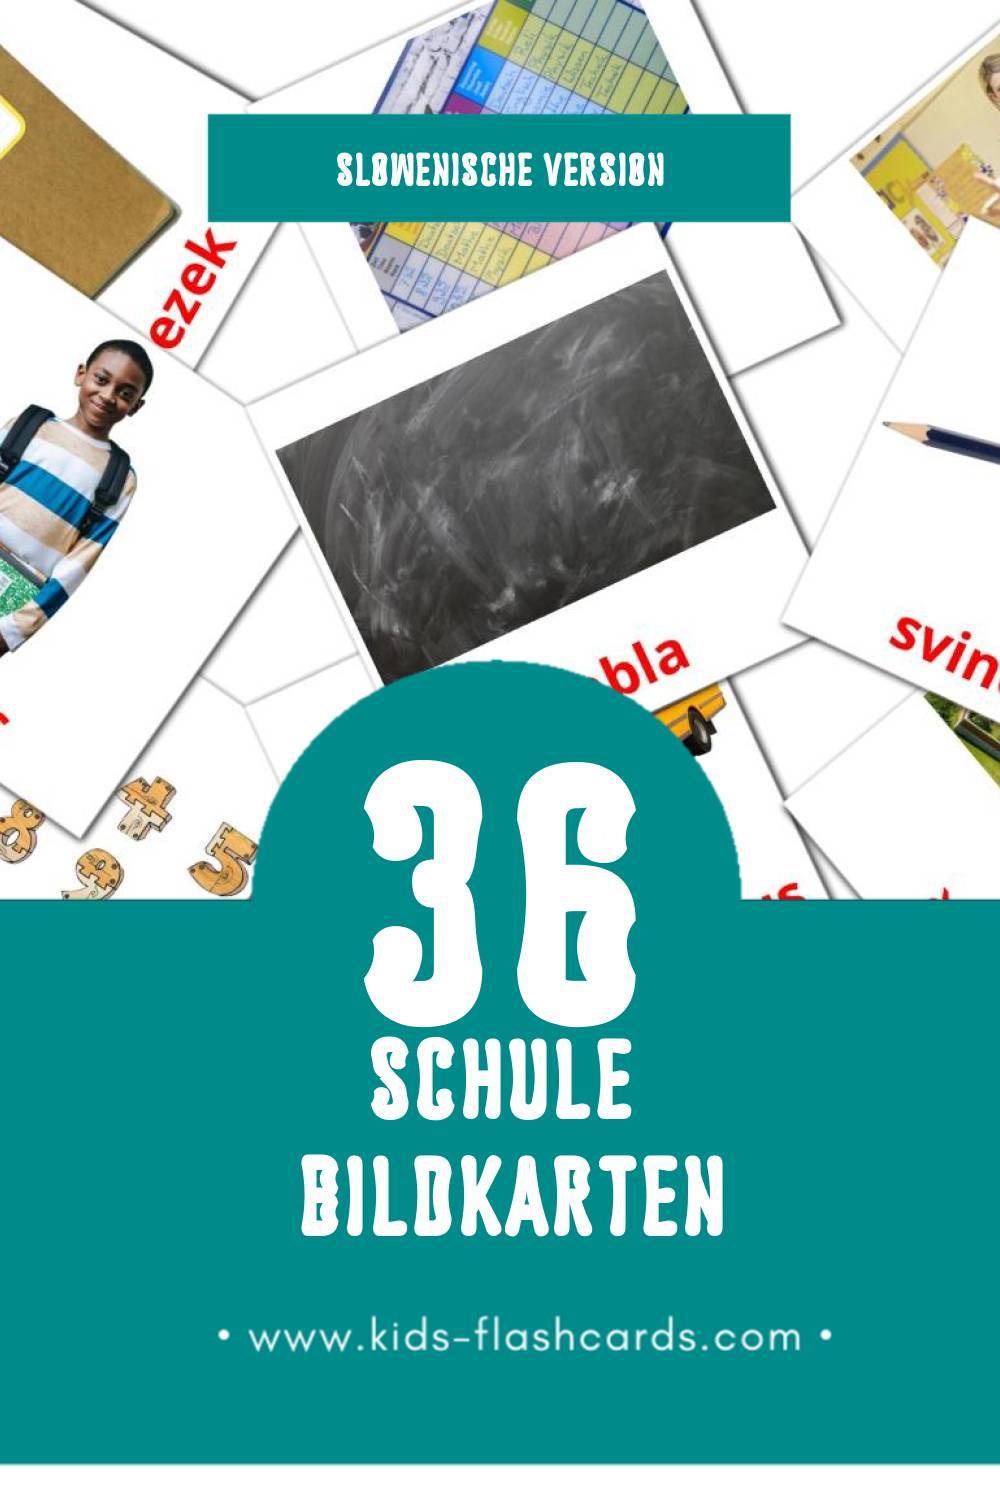 Visual Šola Flashcards für Kleinkinder (36 Karten in Slowenisch)